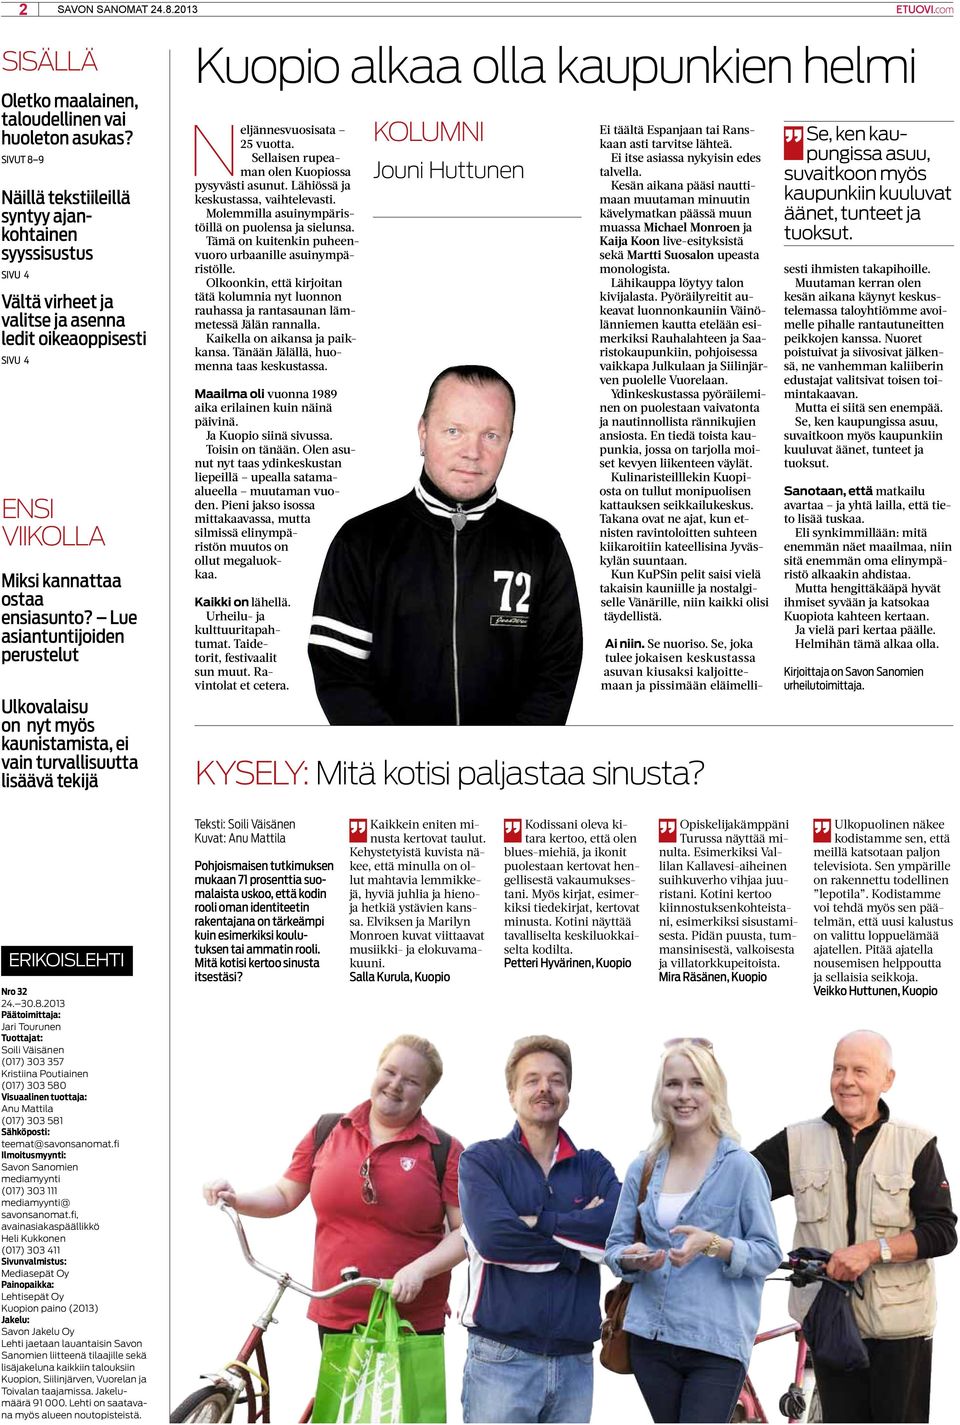 Lue asiantuntijoiden perustelut Ulkovalaisu on nyt myös kaunistamista, ei vain turvallisuutta lisäävä tekijä Kuopio alkaa olla kaupunkien helmi Neljännesvuosisata 25 vuotta.